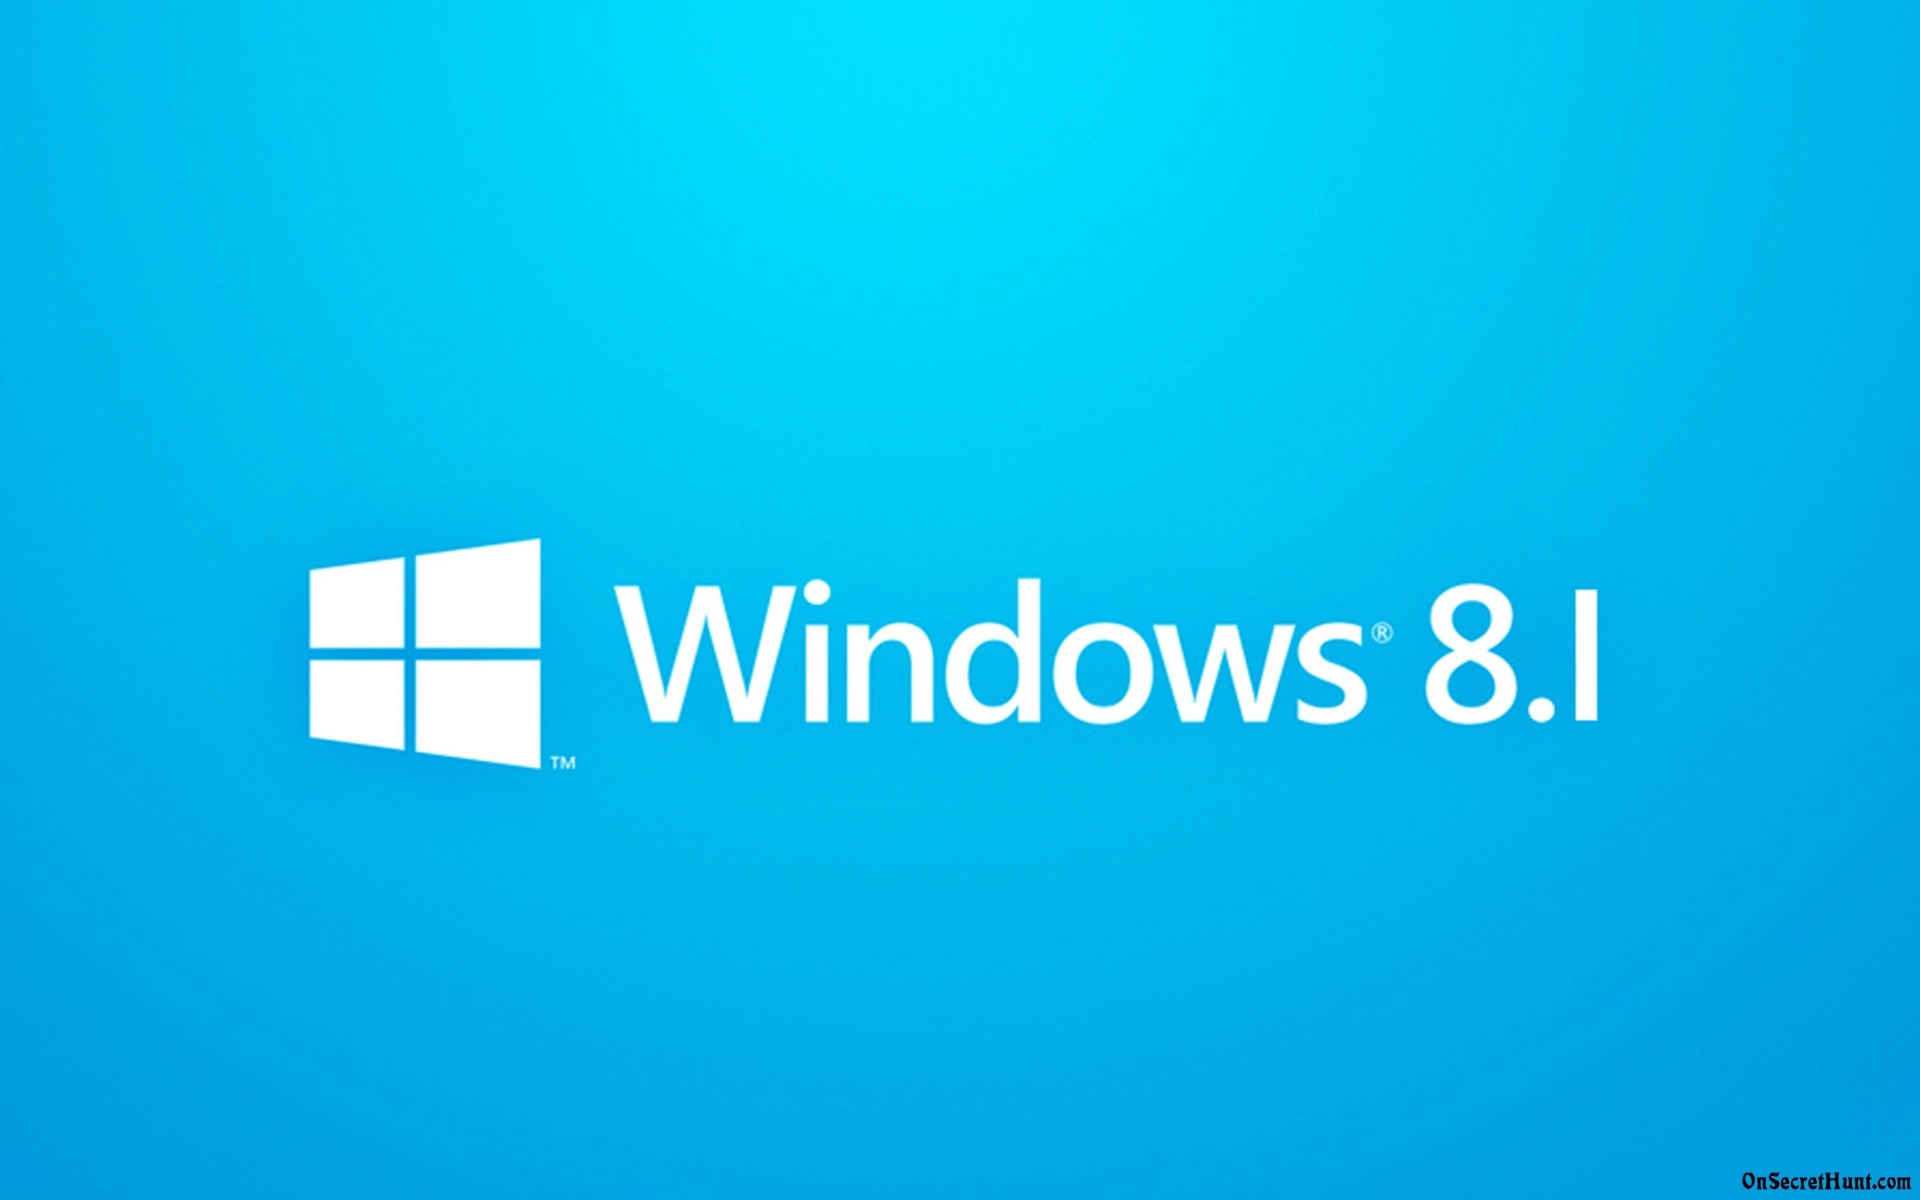 fond d'écran windows 8.1,bleu,aqua,texte,police de caractère,turquoise